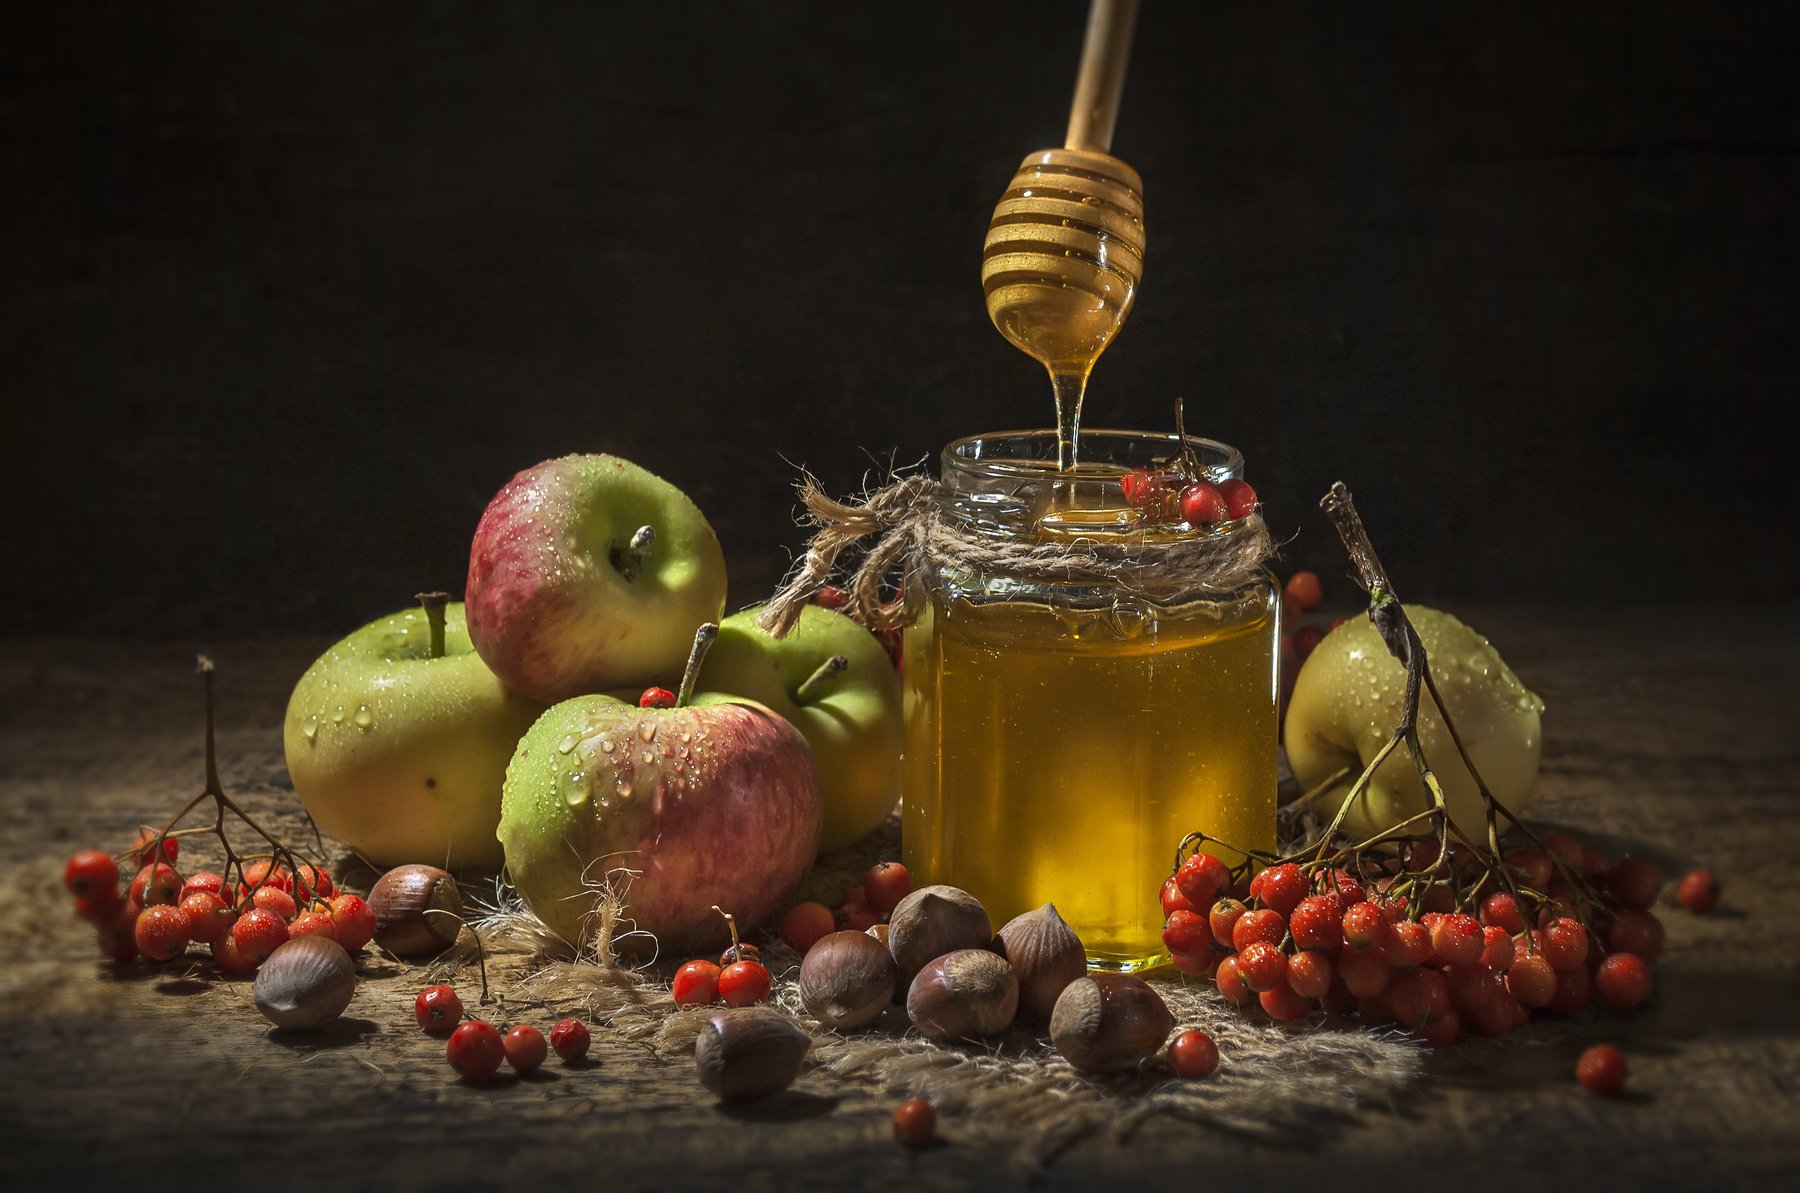 мёд,яблоки,баночка,вкус,жидкий,золотой,тёплый,сладко,рябина,спас, Владимир Володин